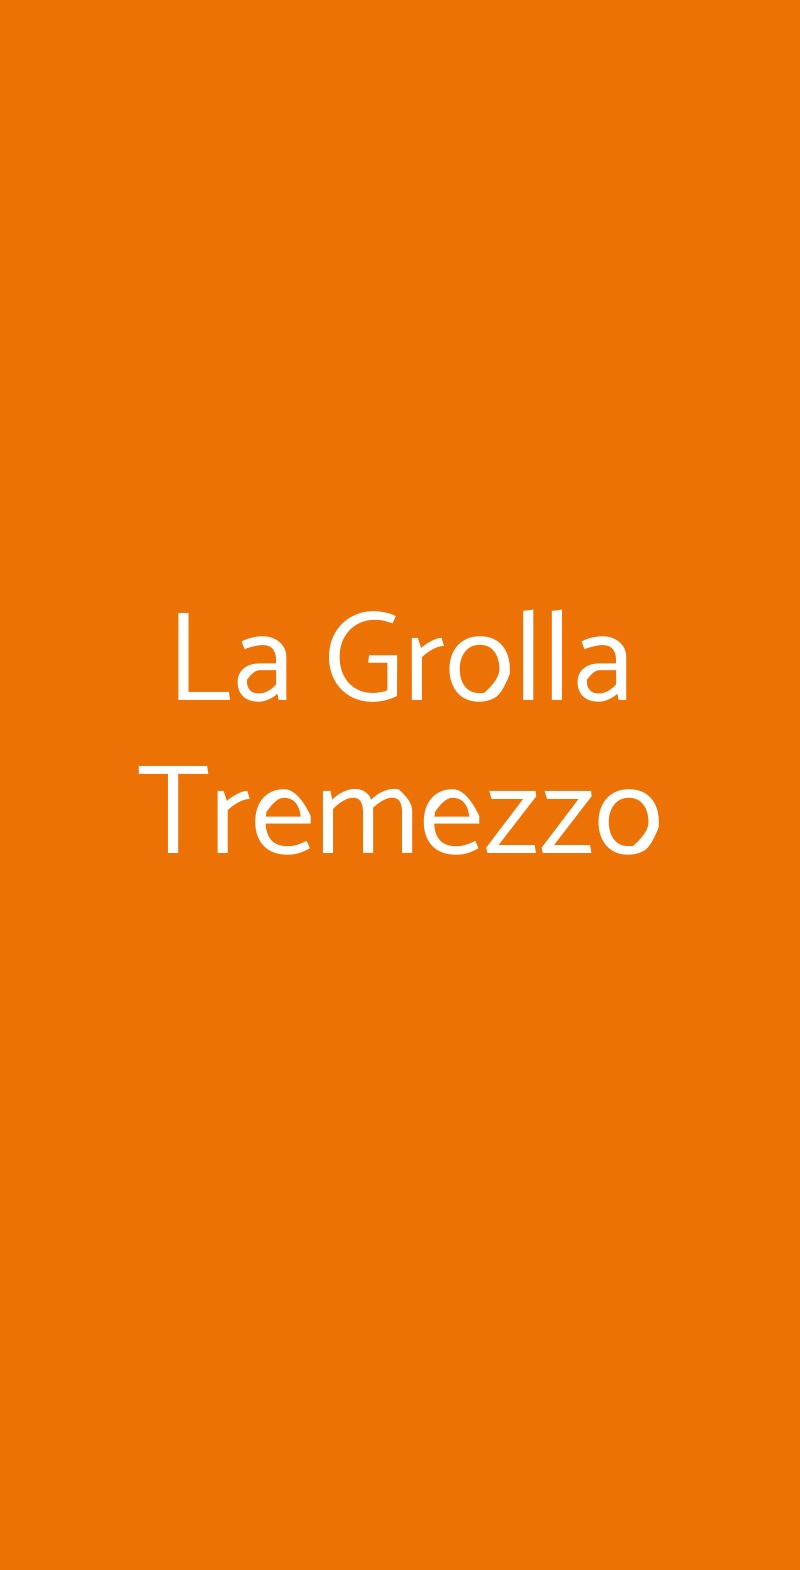 La Grolla Tremezzo Tremezzina menù 1 pagina